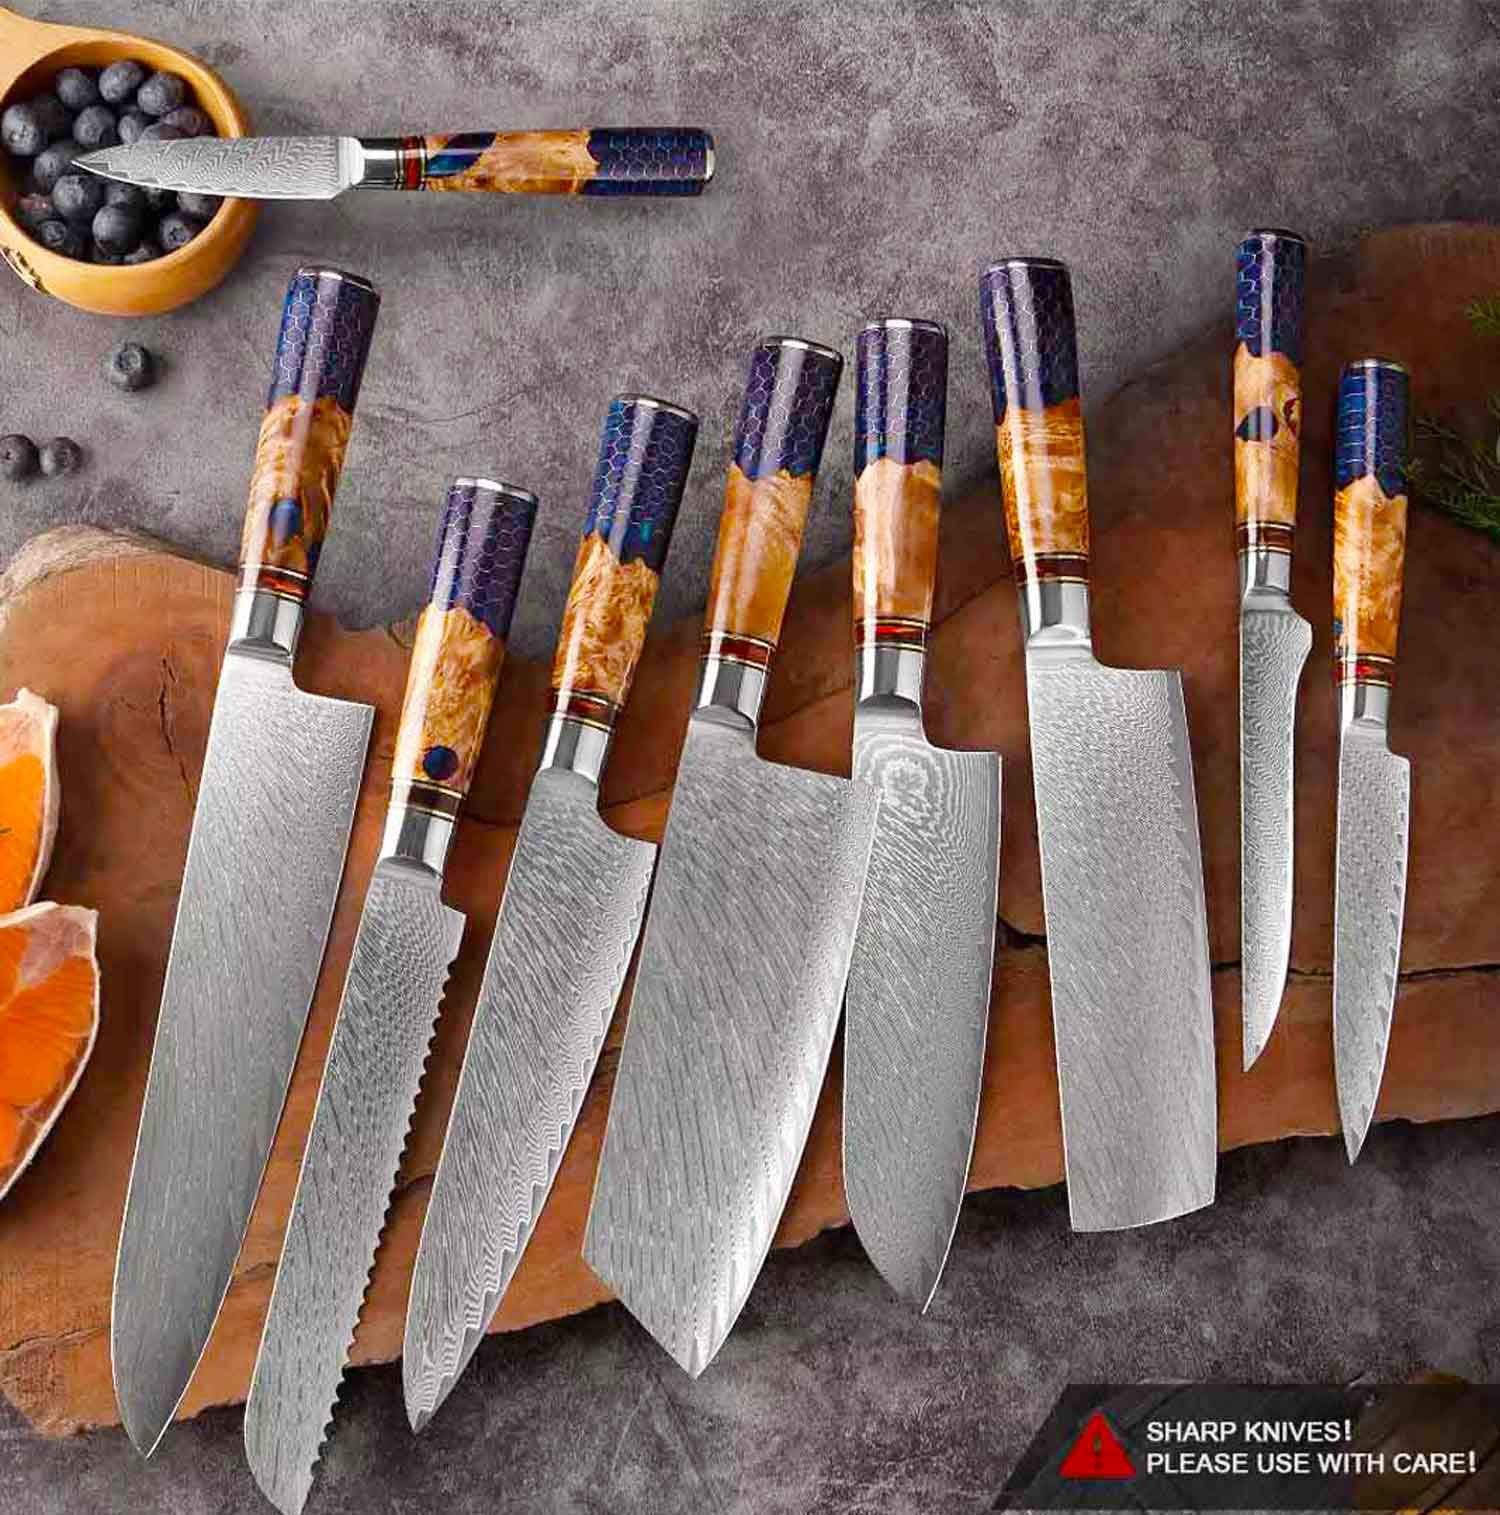 Muxel Allzweckmesser Damast Küchenmesser Set 9-tlg Extrem scharfe extrem  schöne Kochmesser, Jedes Messer ist ein Unikat